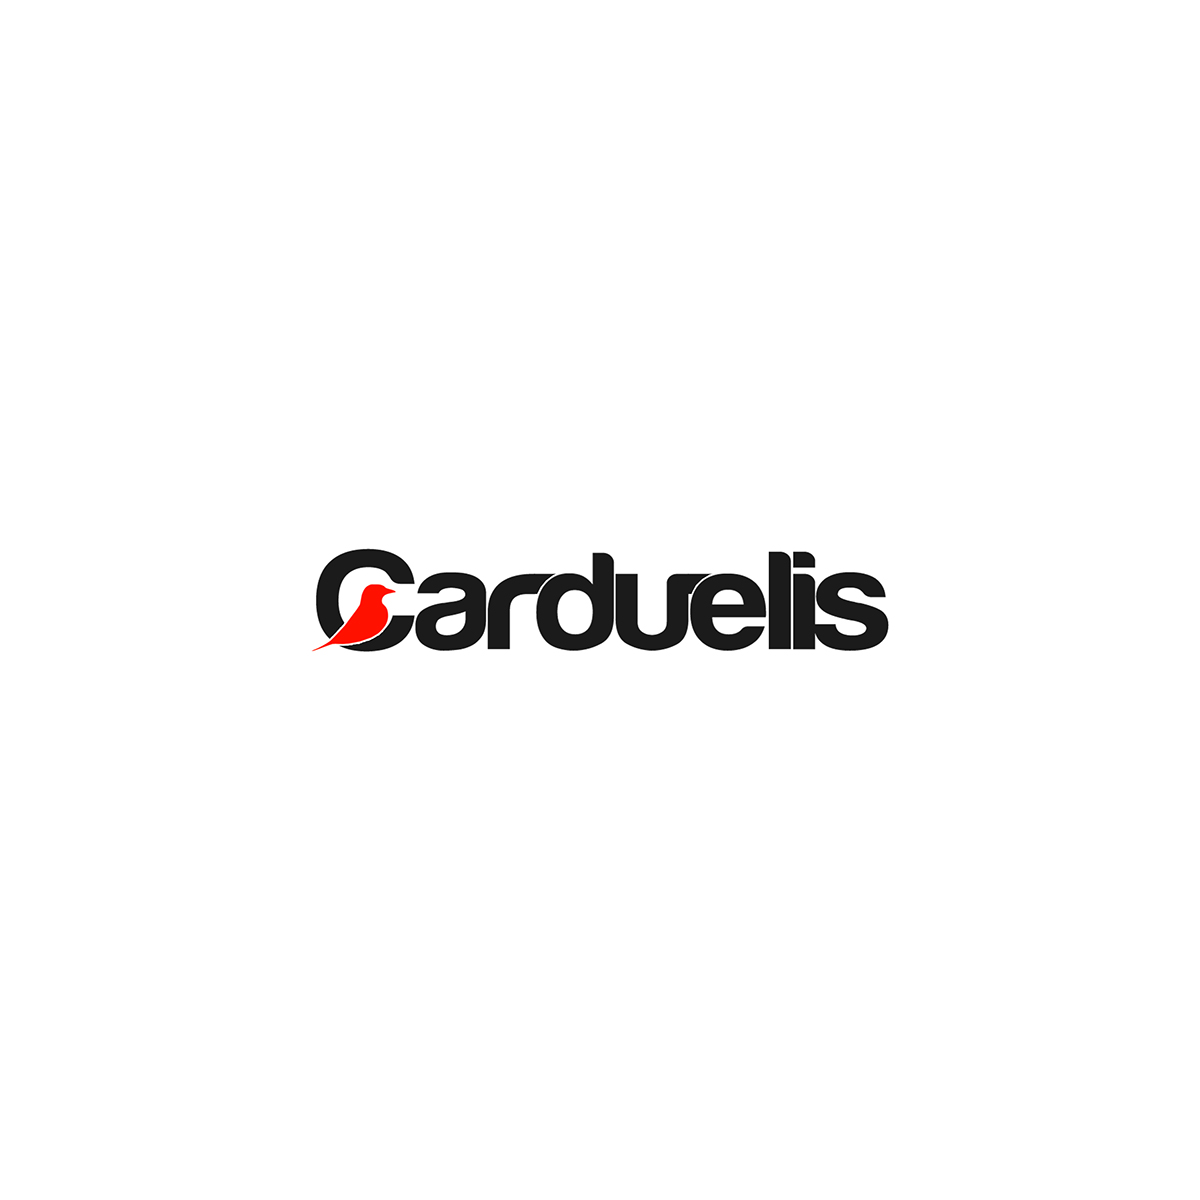 carduelis logo Logotip